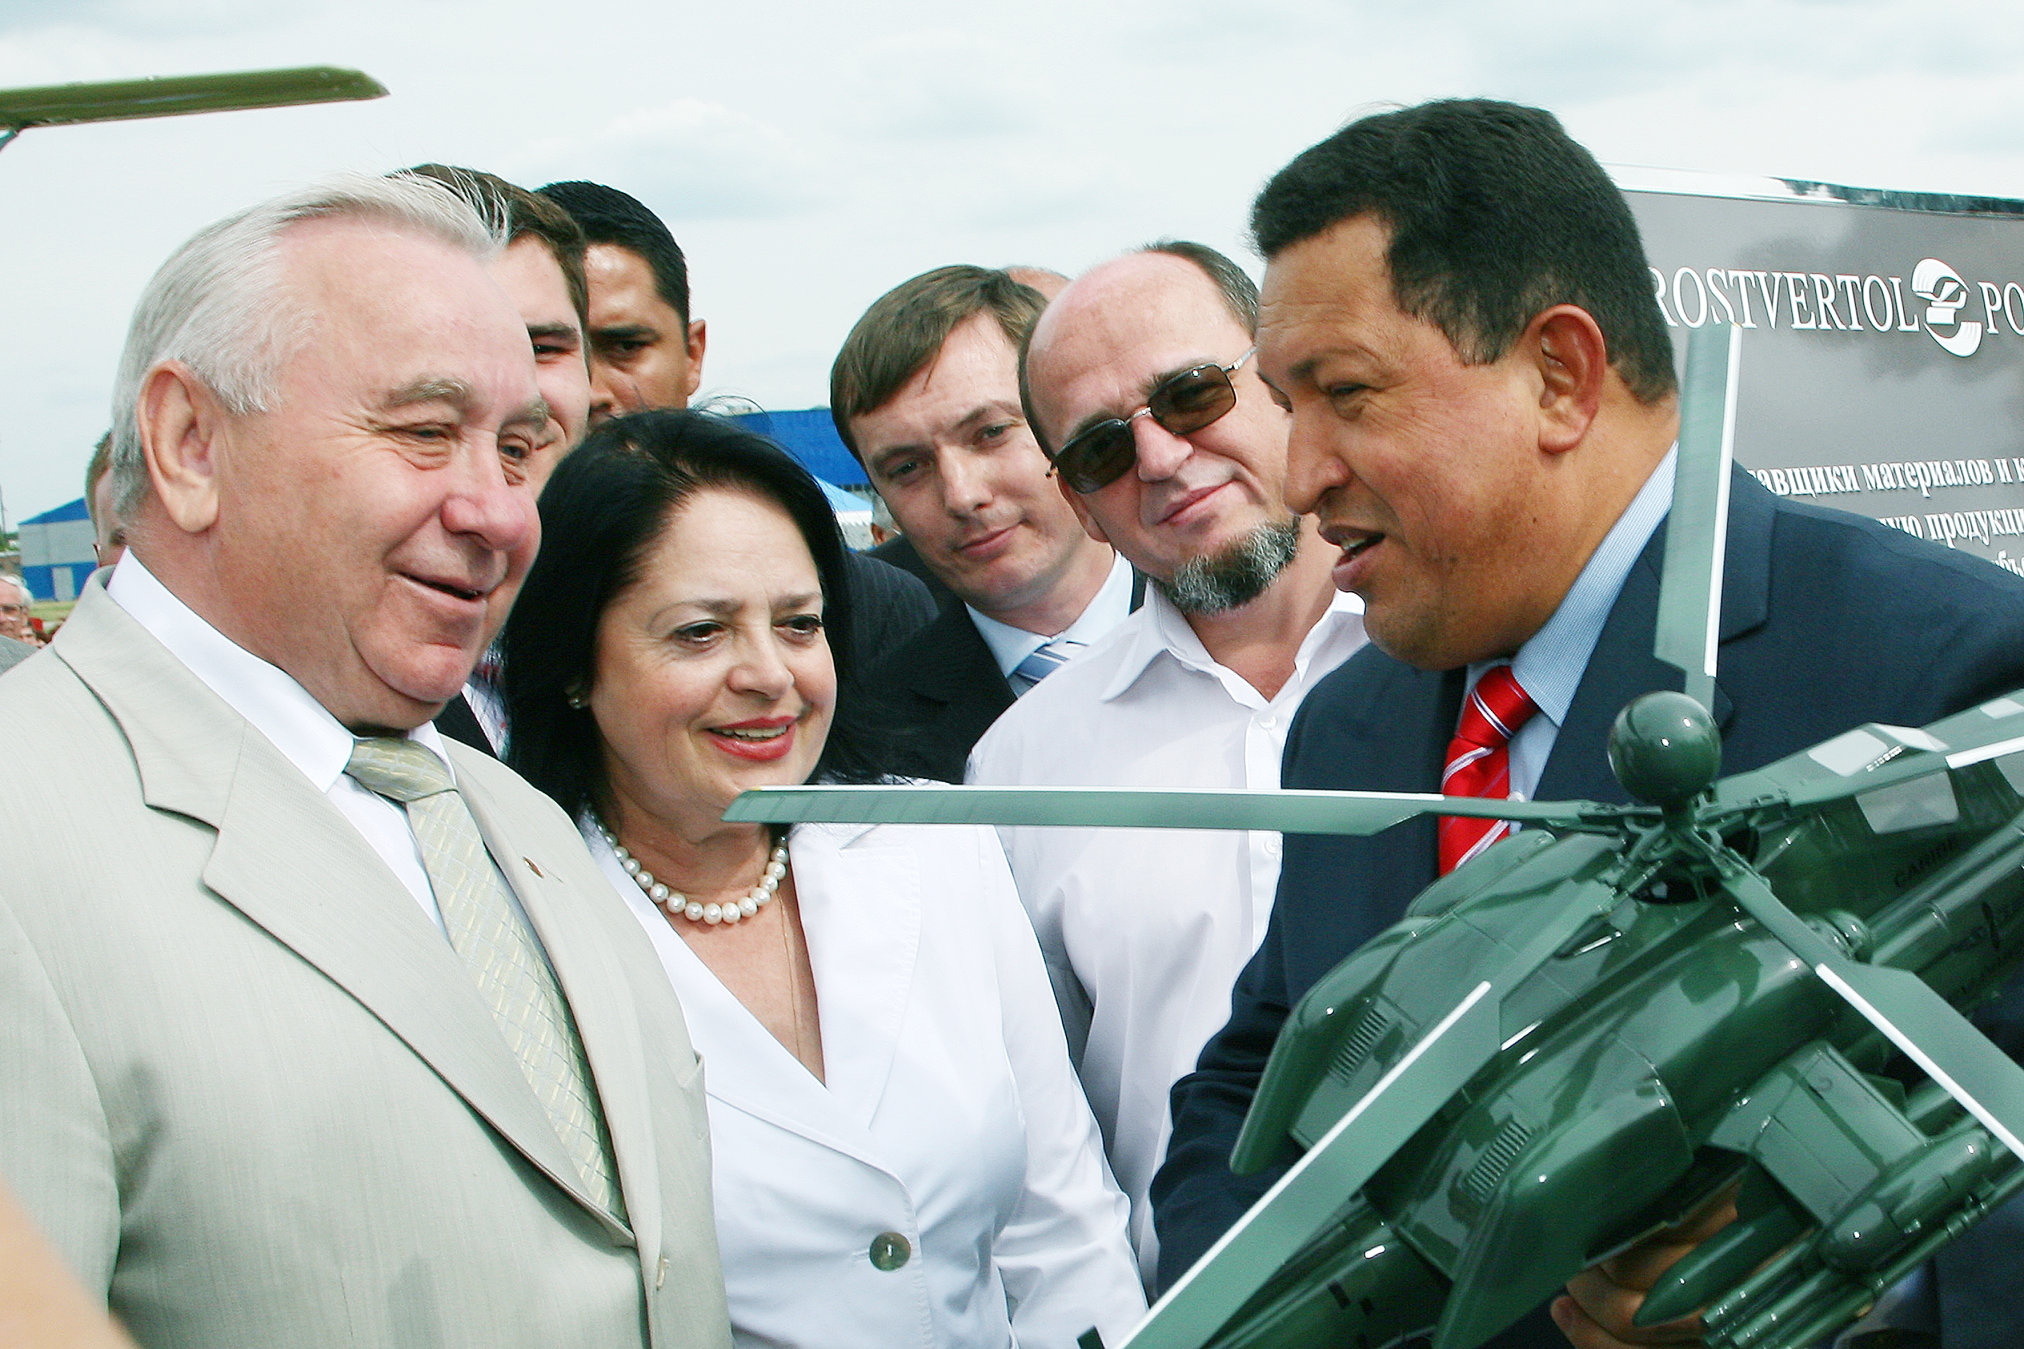 Б.Н. Слюсарь преподнес президенту Венесуэлы Уго Чавесу модель вертолета Ми-28Н в память о посещении «Роствертола». 30.06.2007 г..png